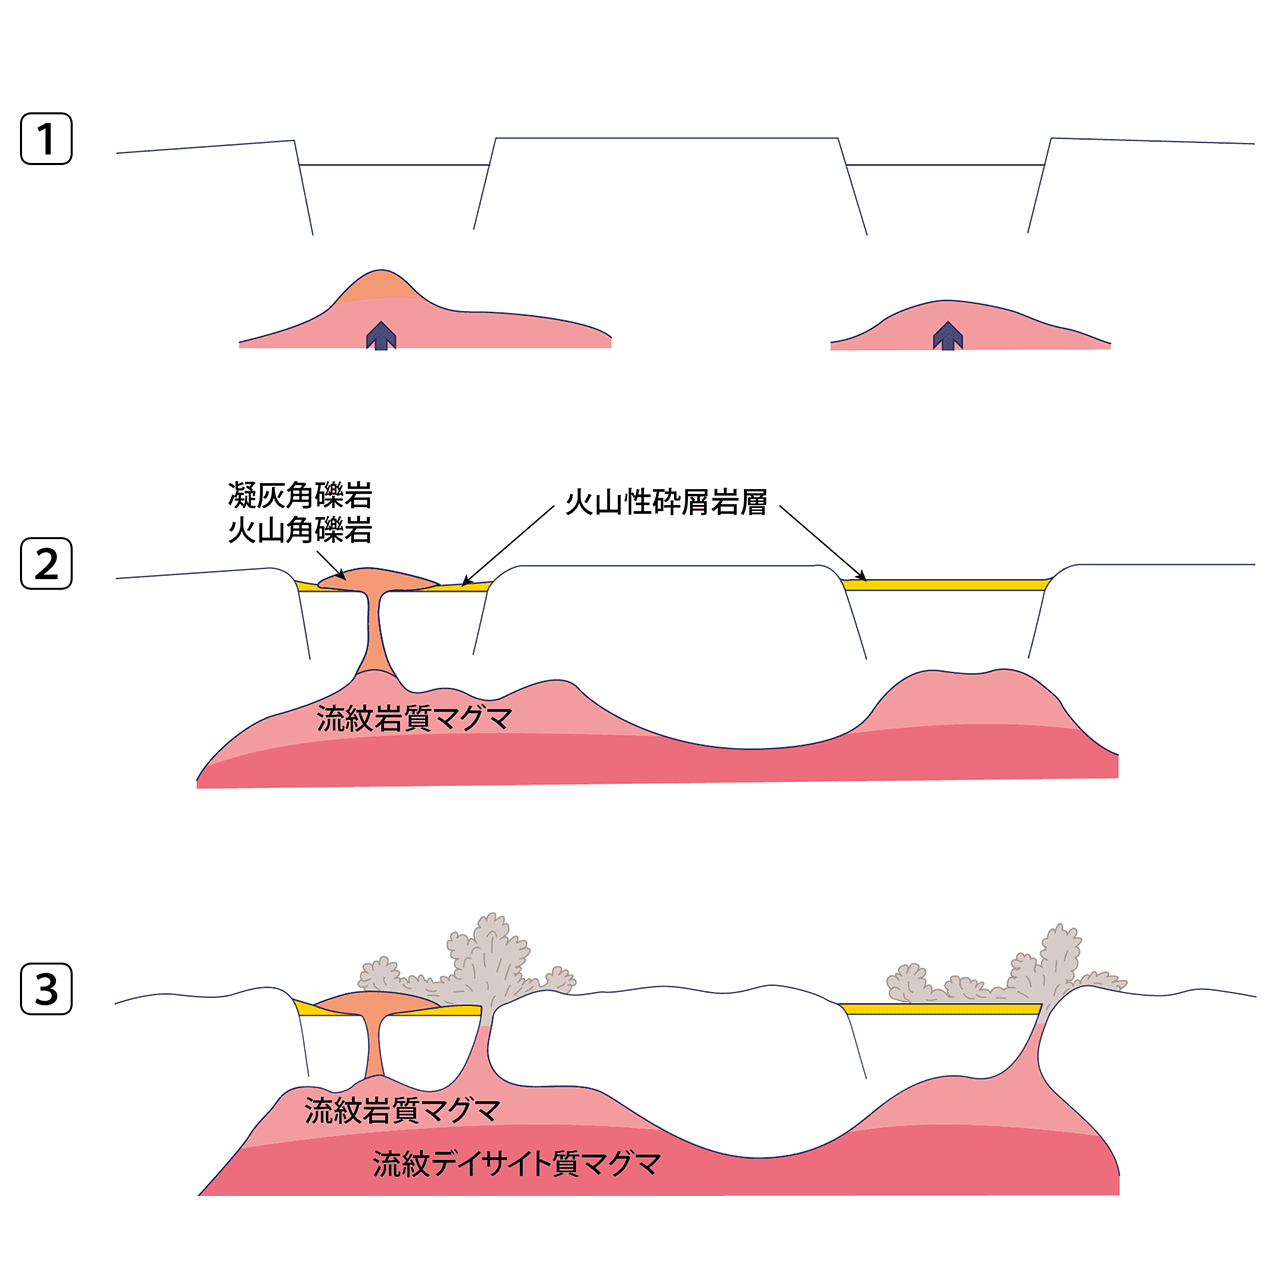 濃飛流紋岩（NOHI-3）形成過程模式図1～3